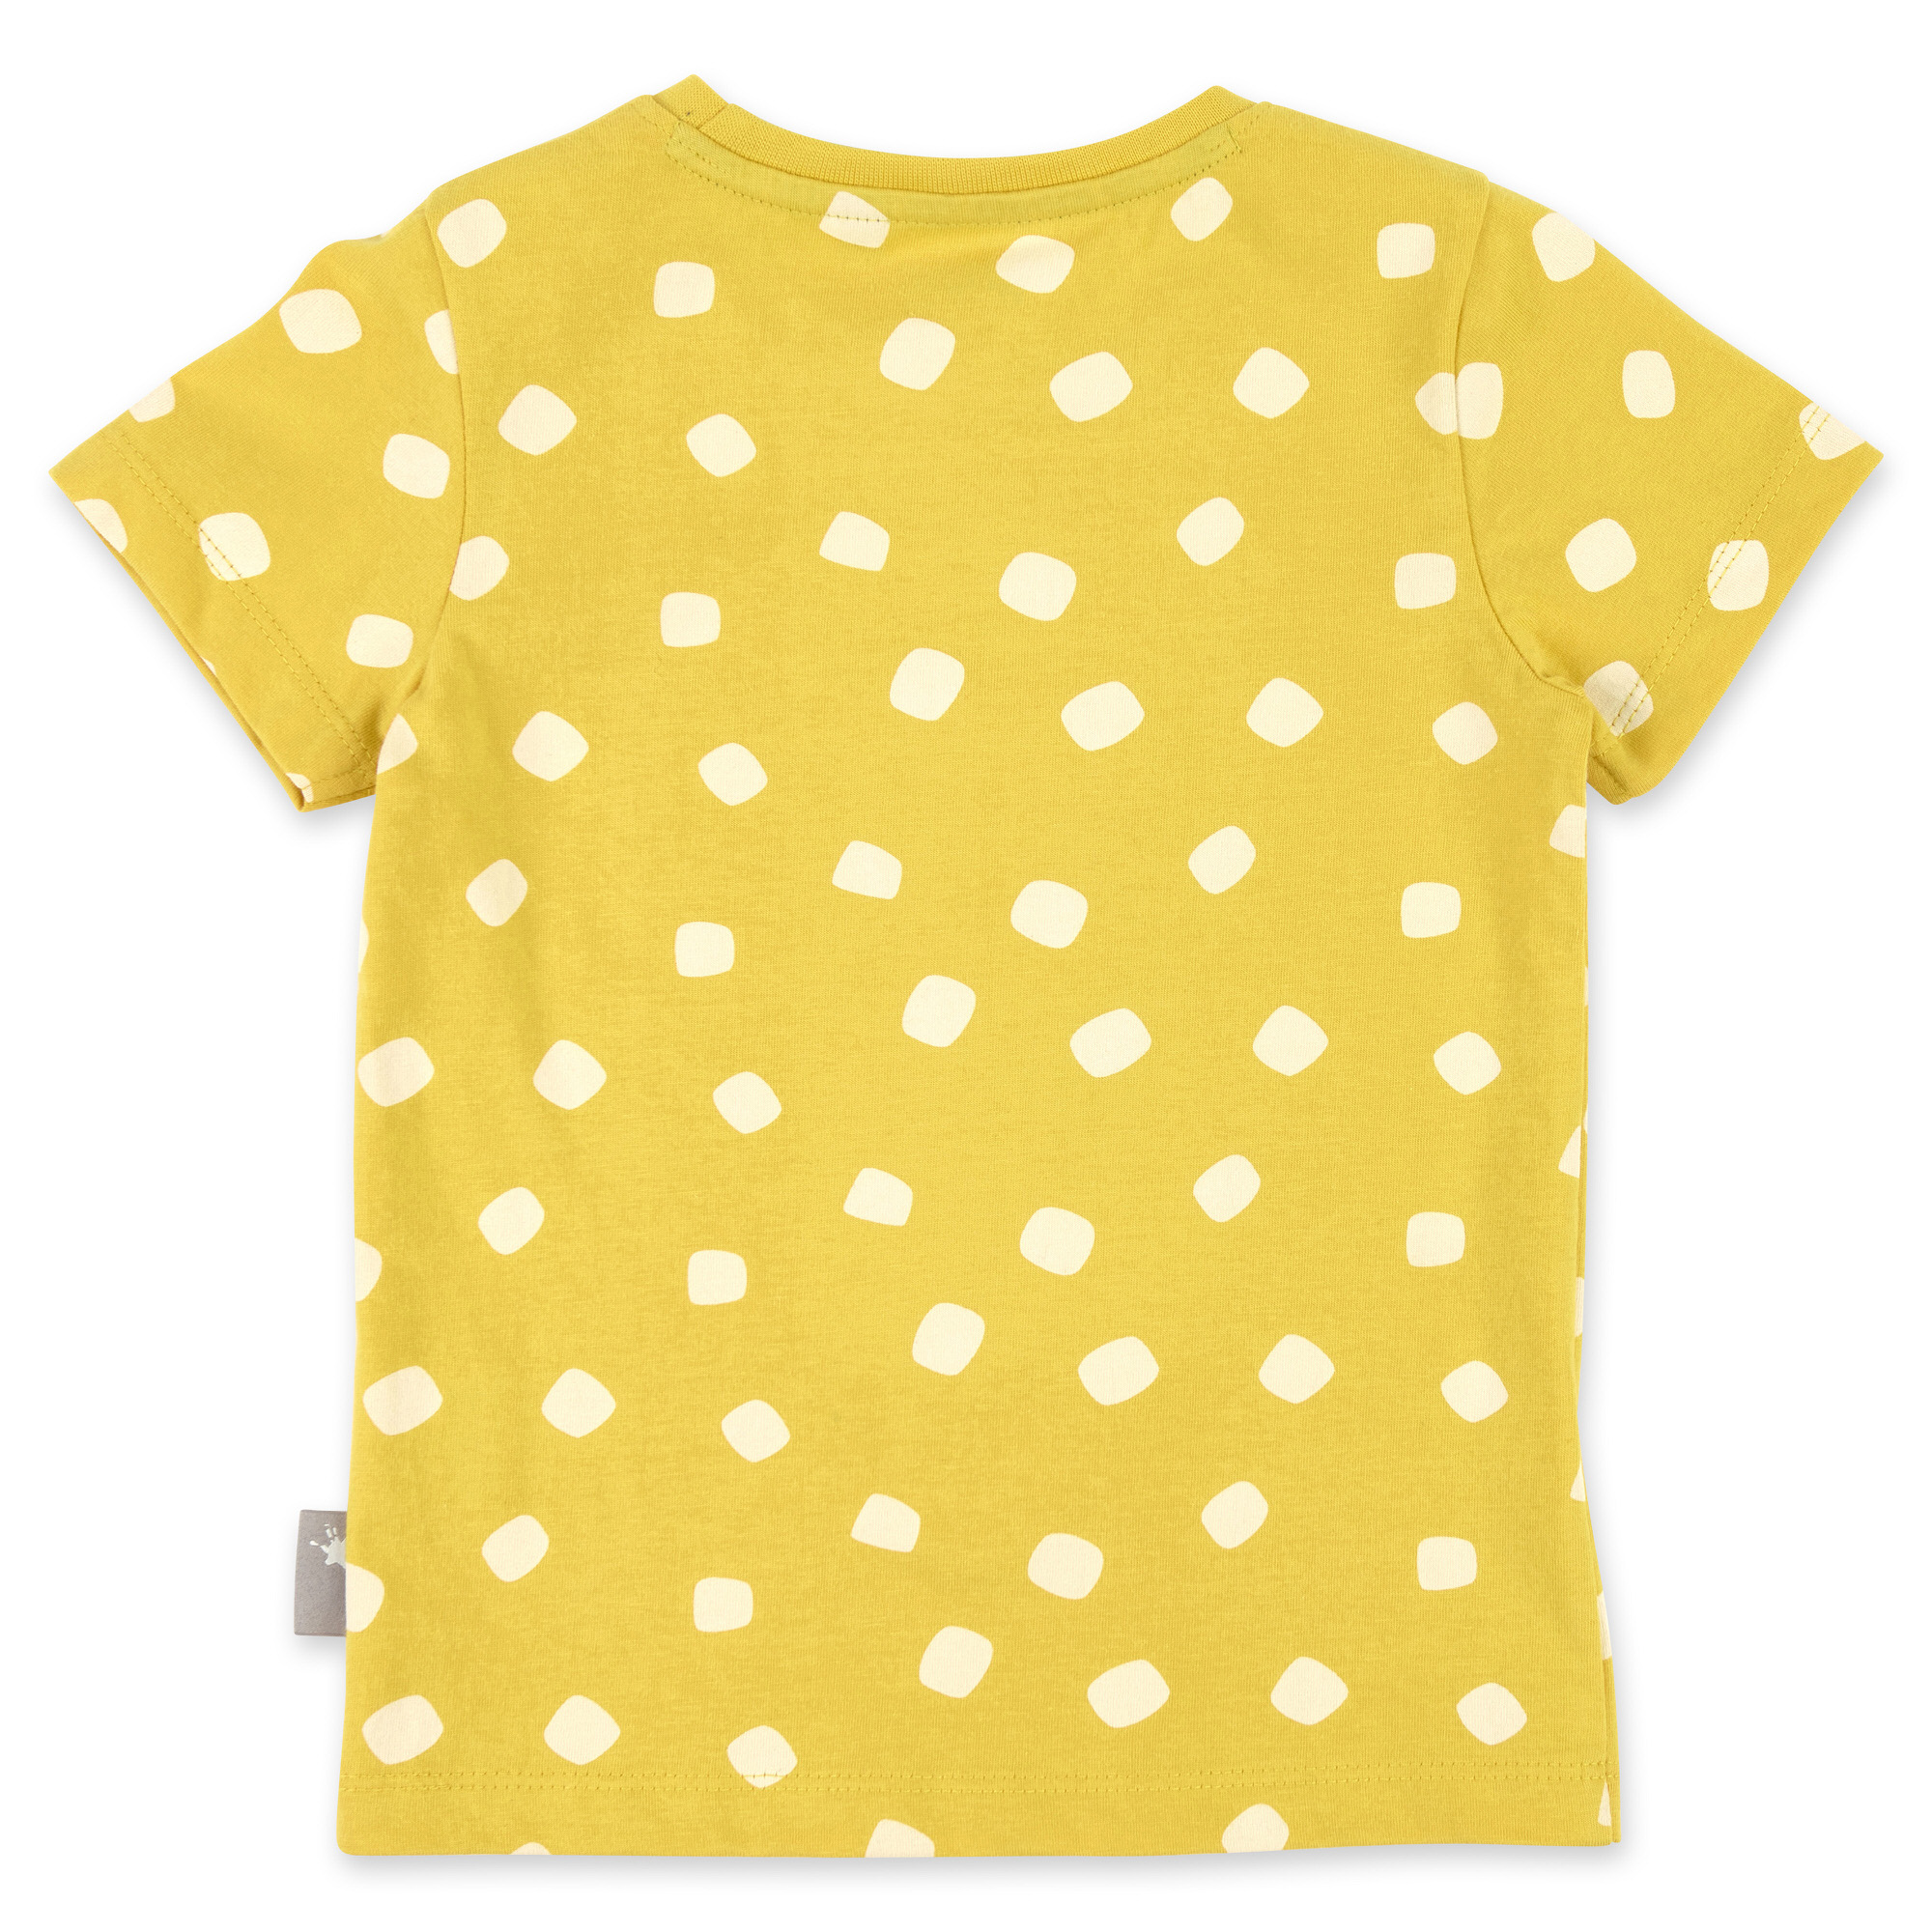 Kurzer Kinder Sommer Schlafanzug Giraffe, gelb-blau